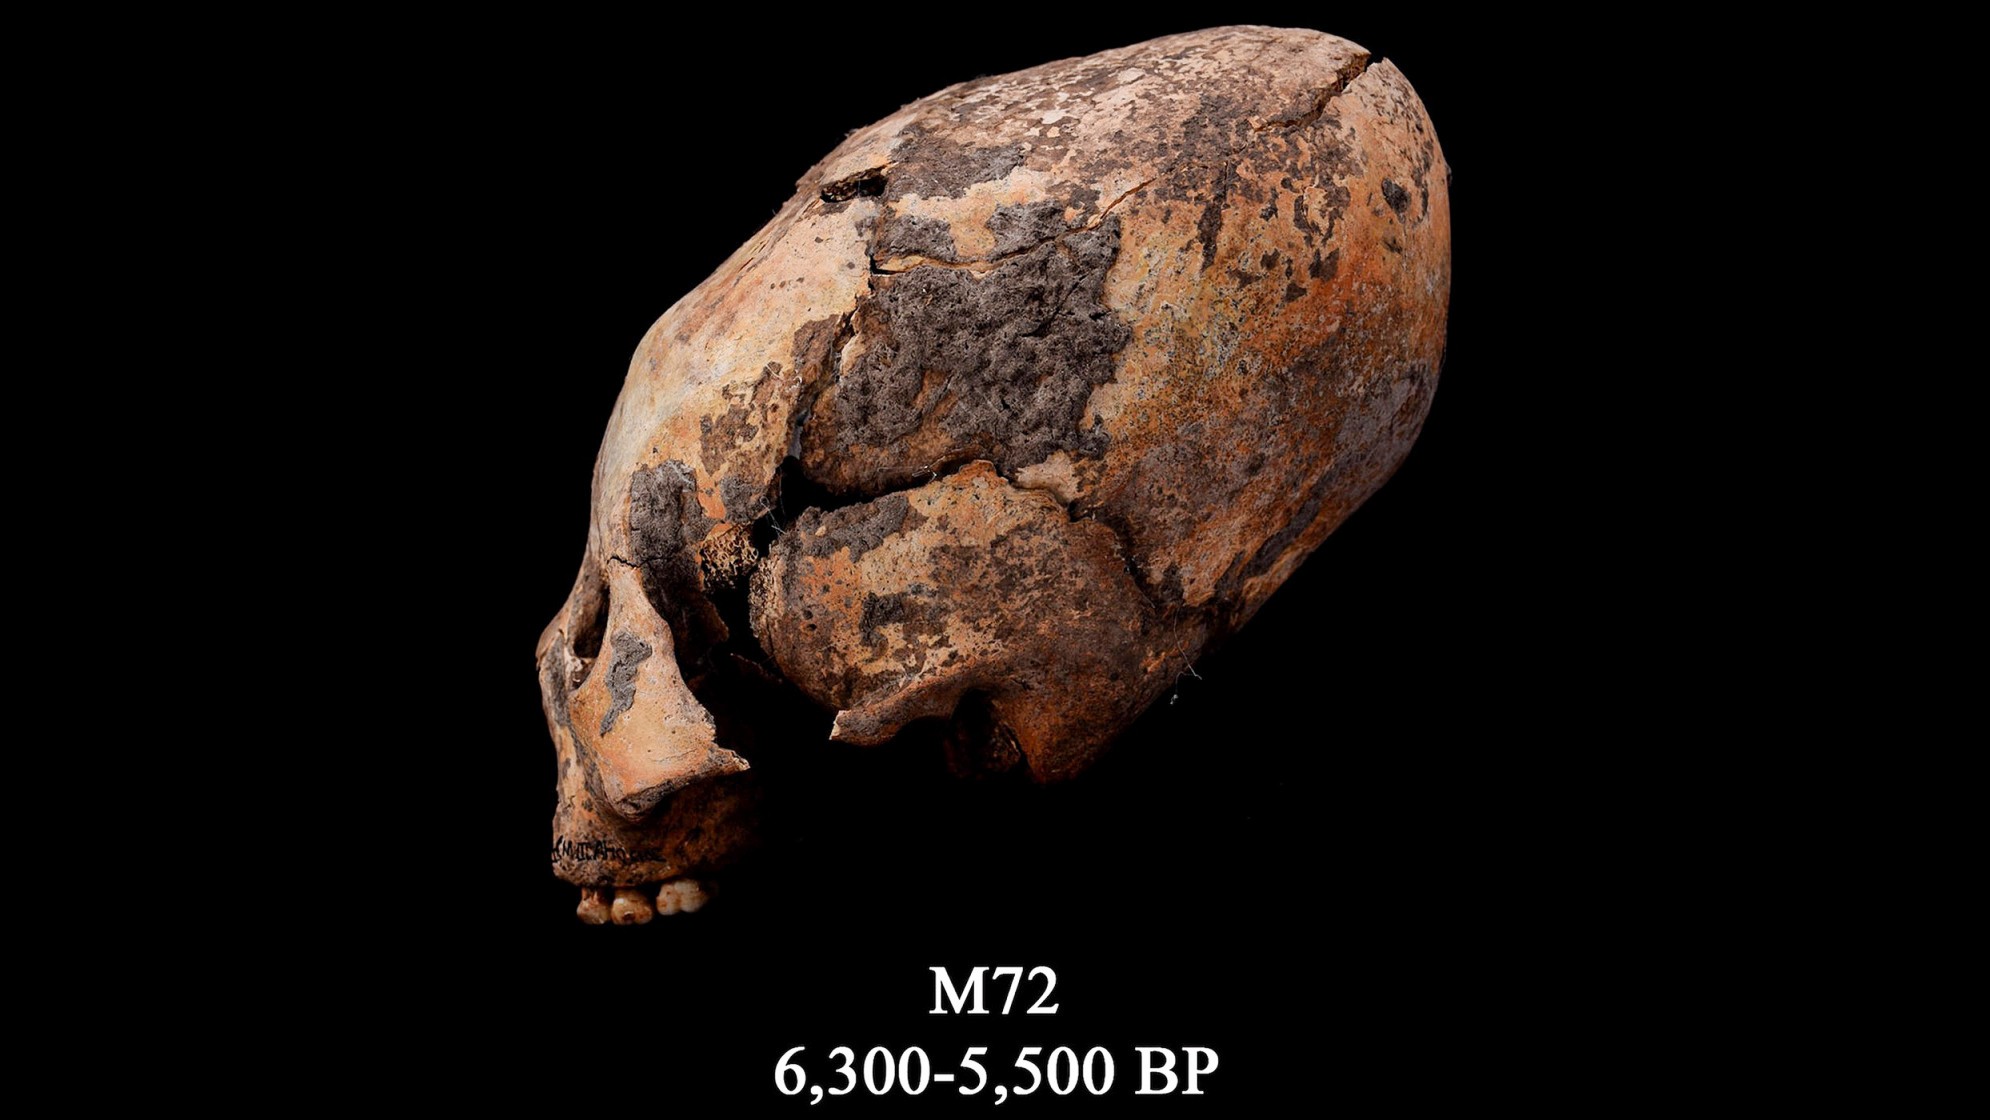 De schedel bekend als M72. Deze hervormde menselijke schedel werd gevonden in het noordoosten van China en werd opzettelijk aangepast